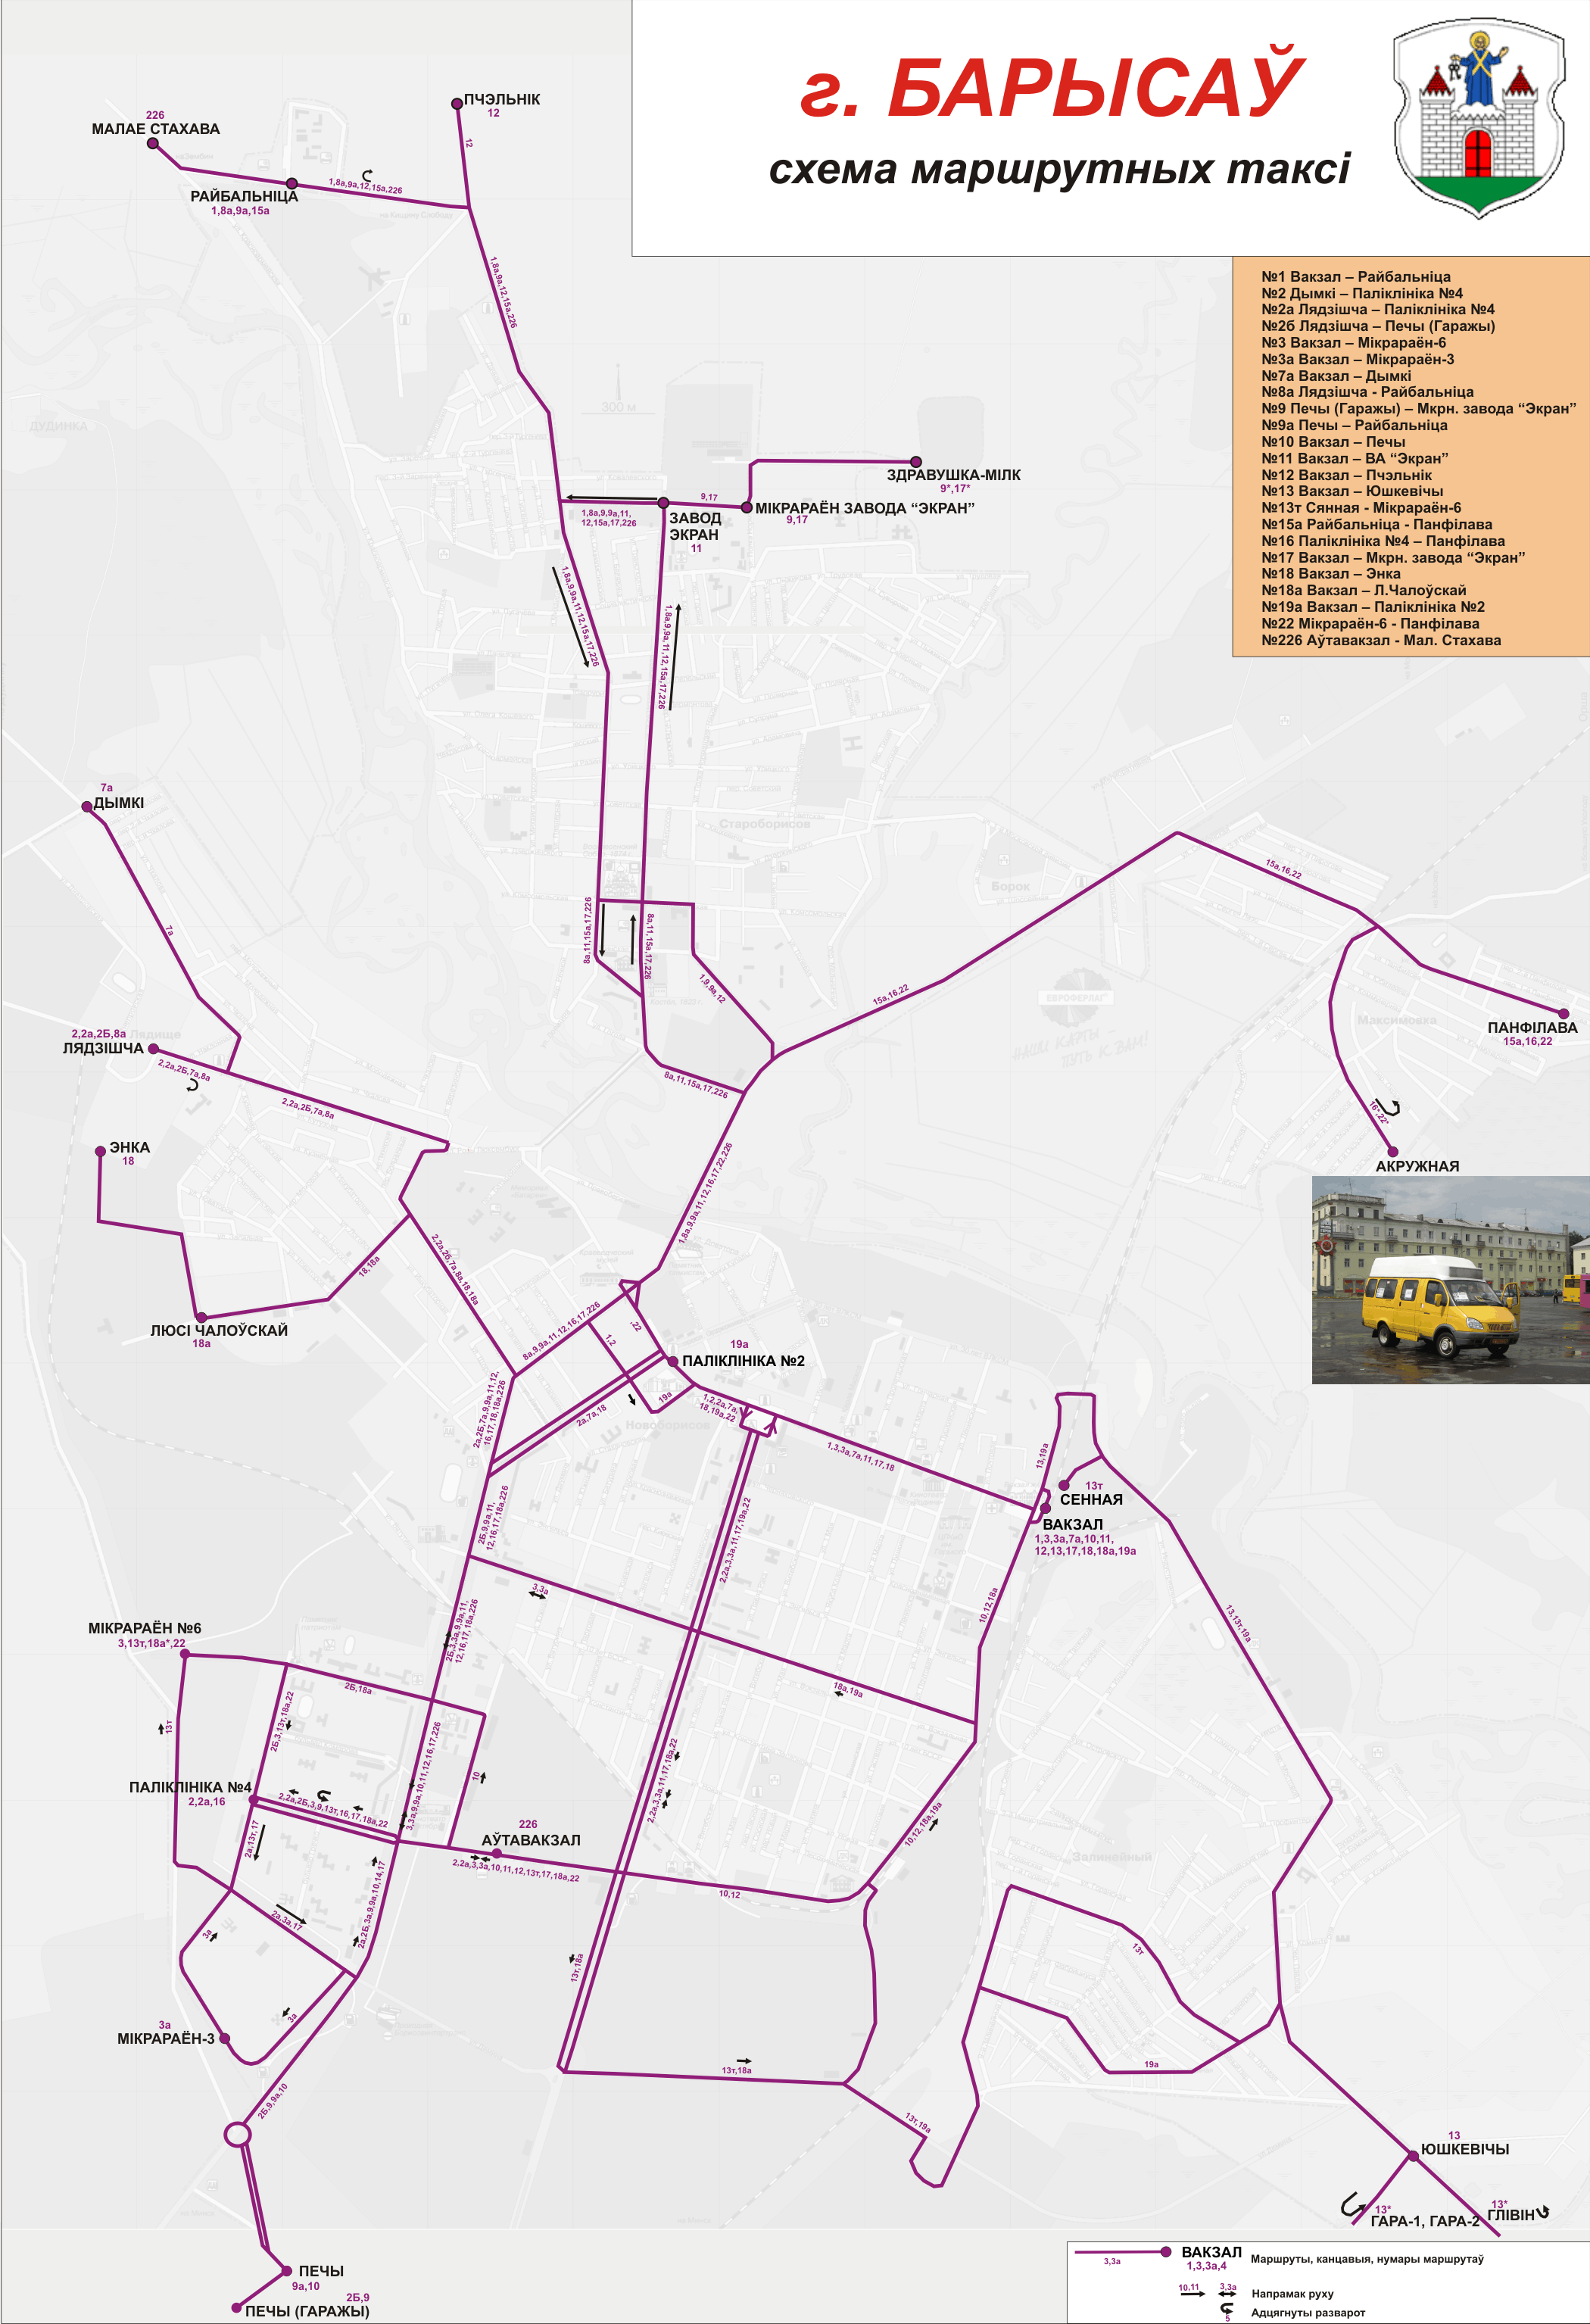 Borisov — Maps; Maps routes